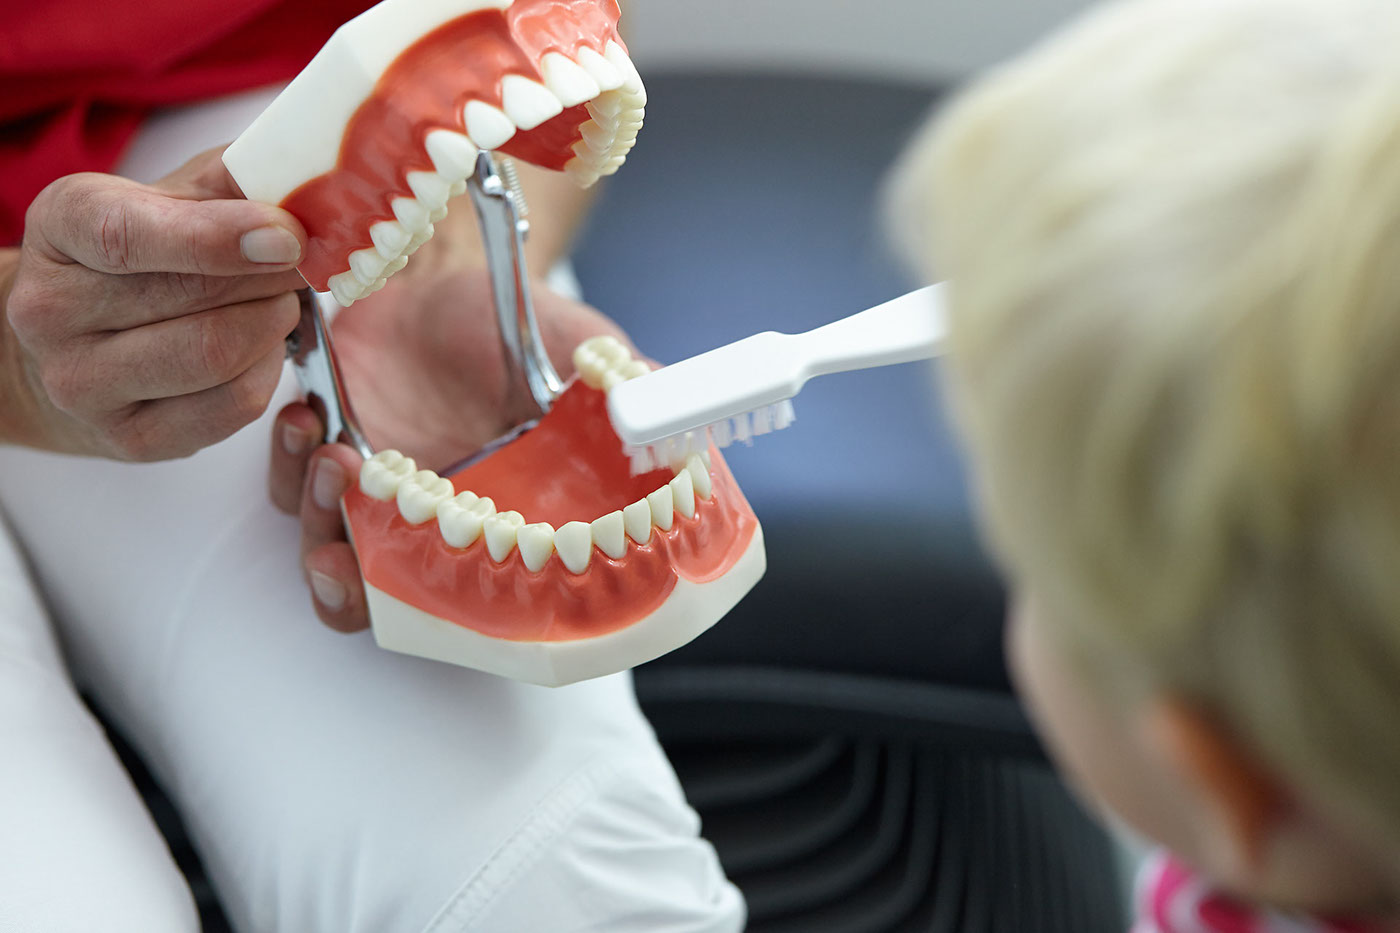 Zahnmedizin praxis Zahnarzt dentist kinderzahnheilkunde braunschweig lachgas